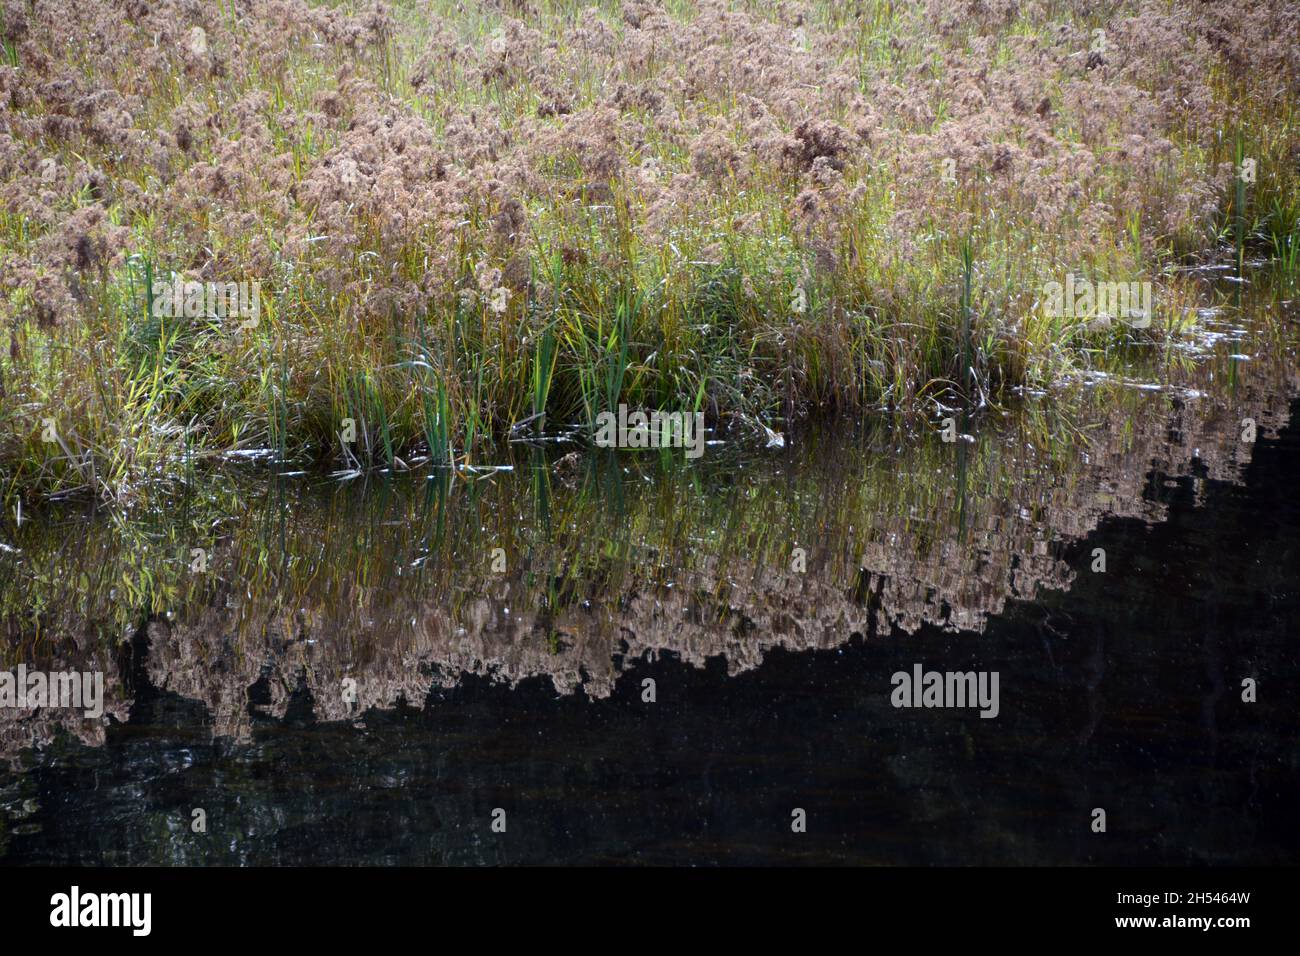 Herbes et plantes dans le marais Pitt-Addington une aire de conservation écologique et un sanctuaire d'oiseaux, près de Pitt Meadows, Colombie-Britannique, Canada. Banque D'Images